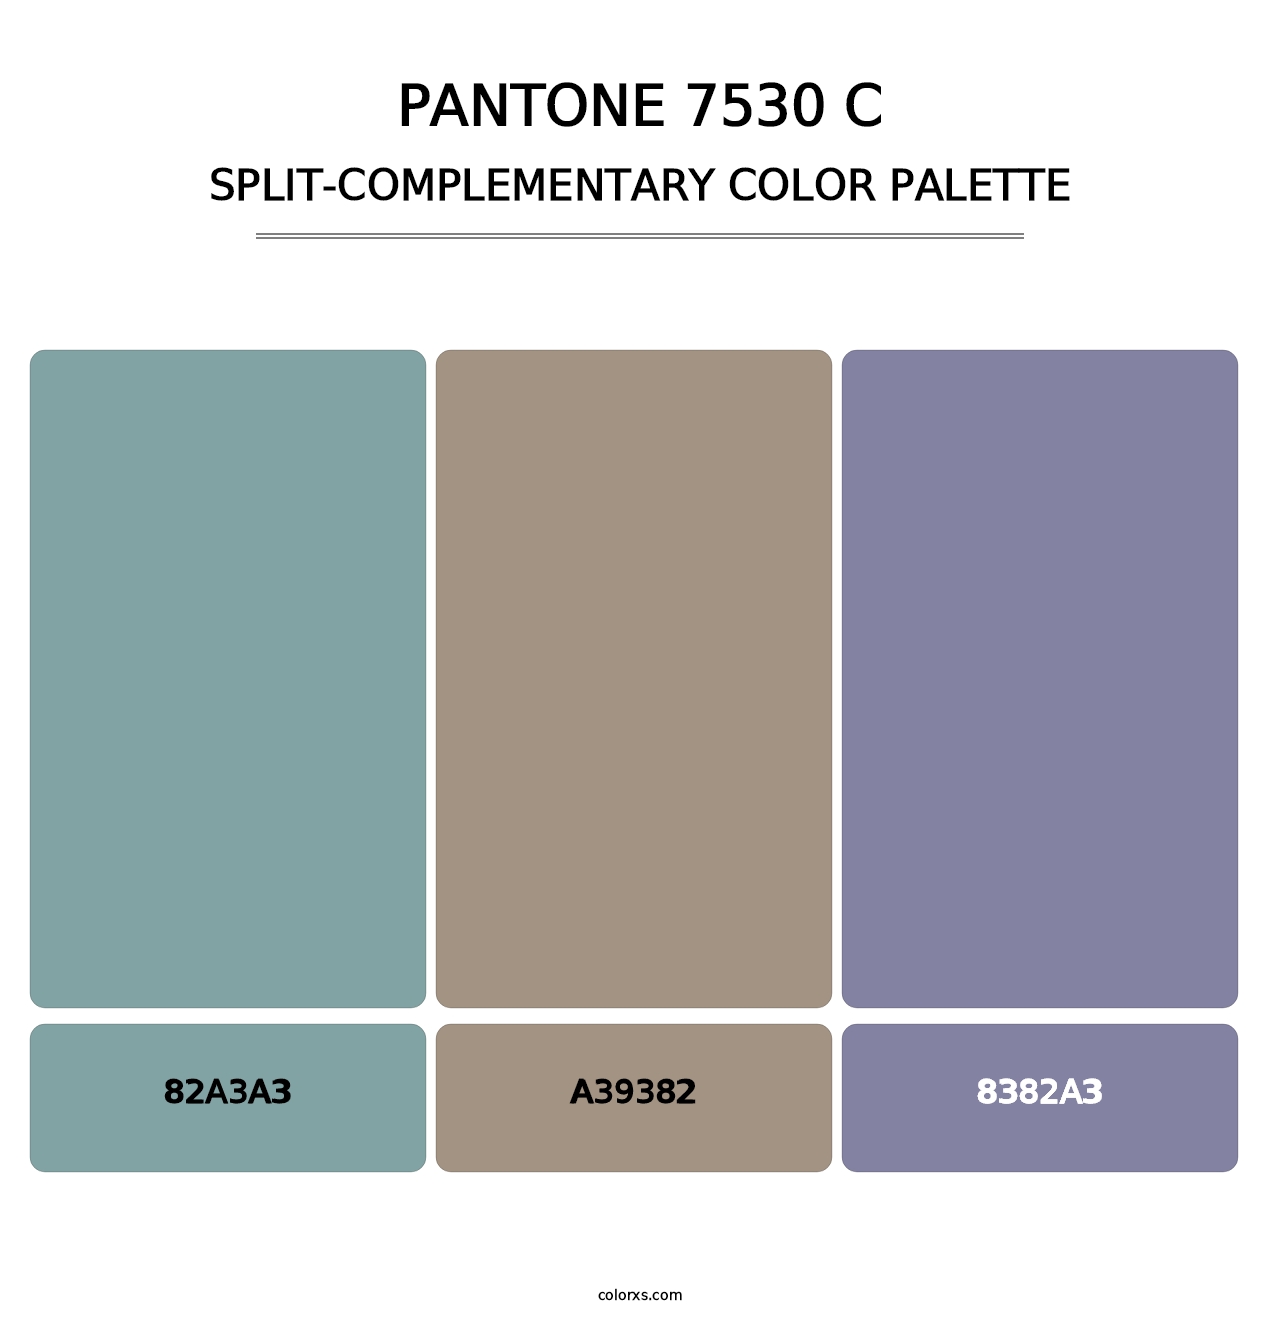 PANTONE 7530 C - Split-Complementary Color Palette